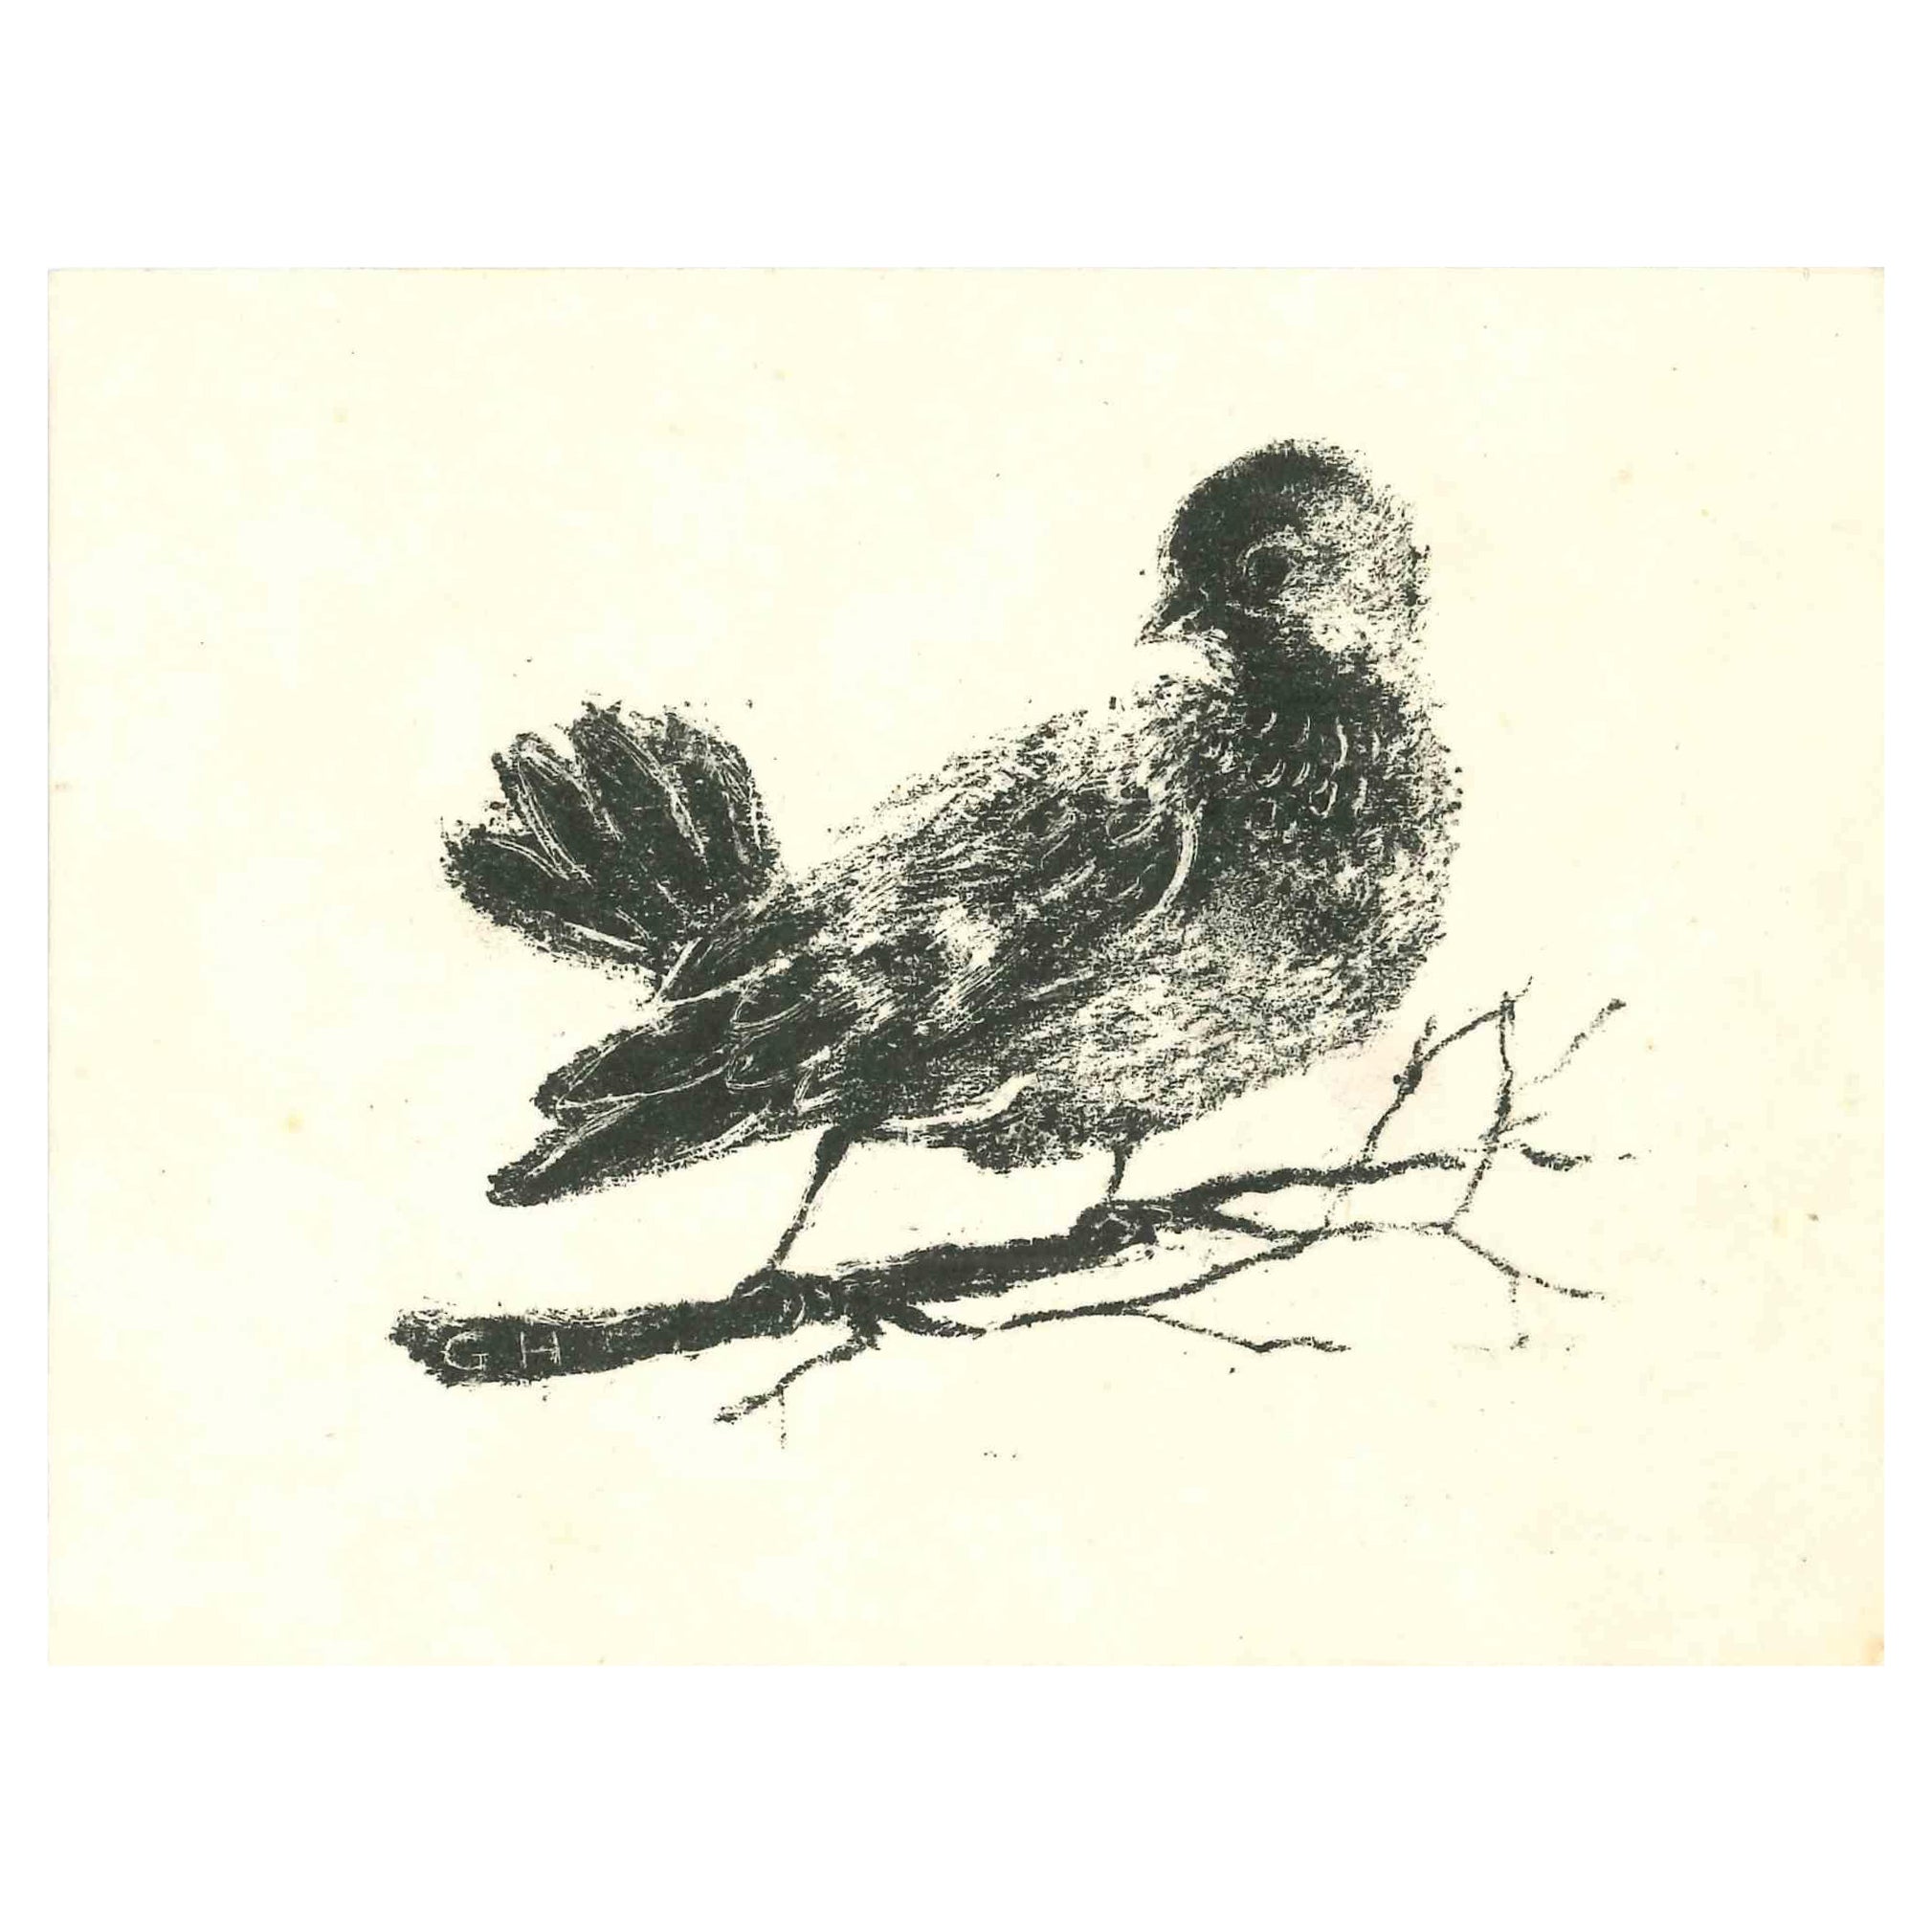 L'Oiseau est une lithographie originale sur papier couleur ivoire réalisée par Giselle Halff en 1950 ca.

Signé à la main au crayon au dos.

Bonnes conditions.

 